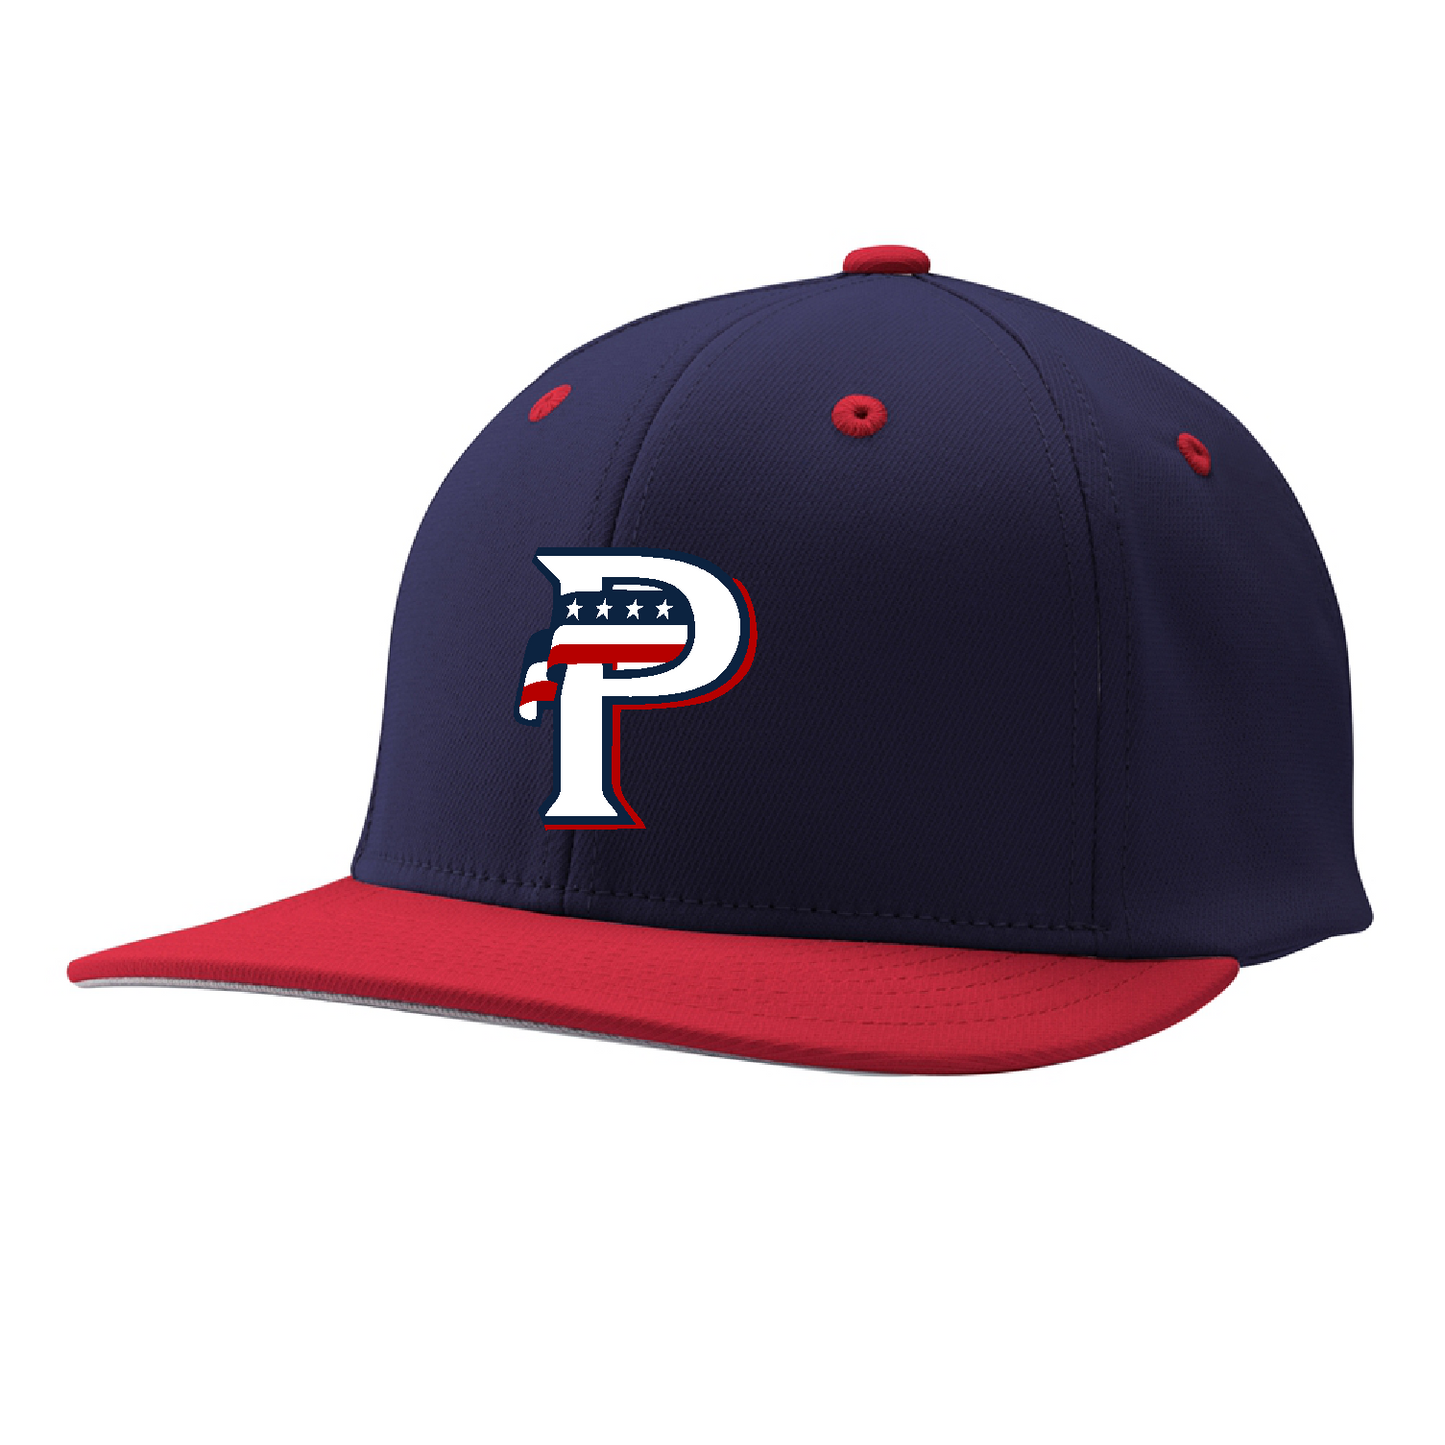 USA Prime Hats